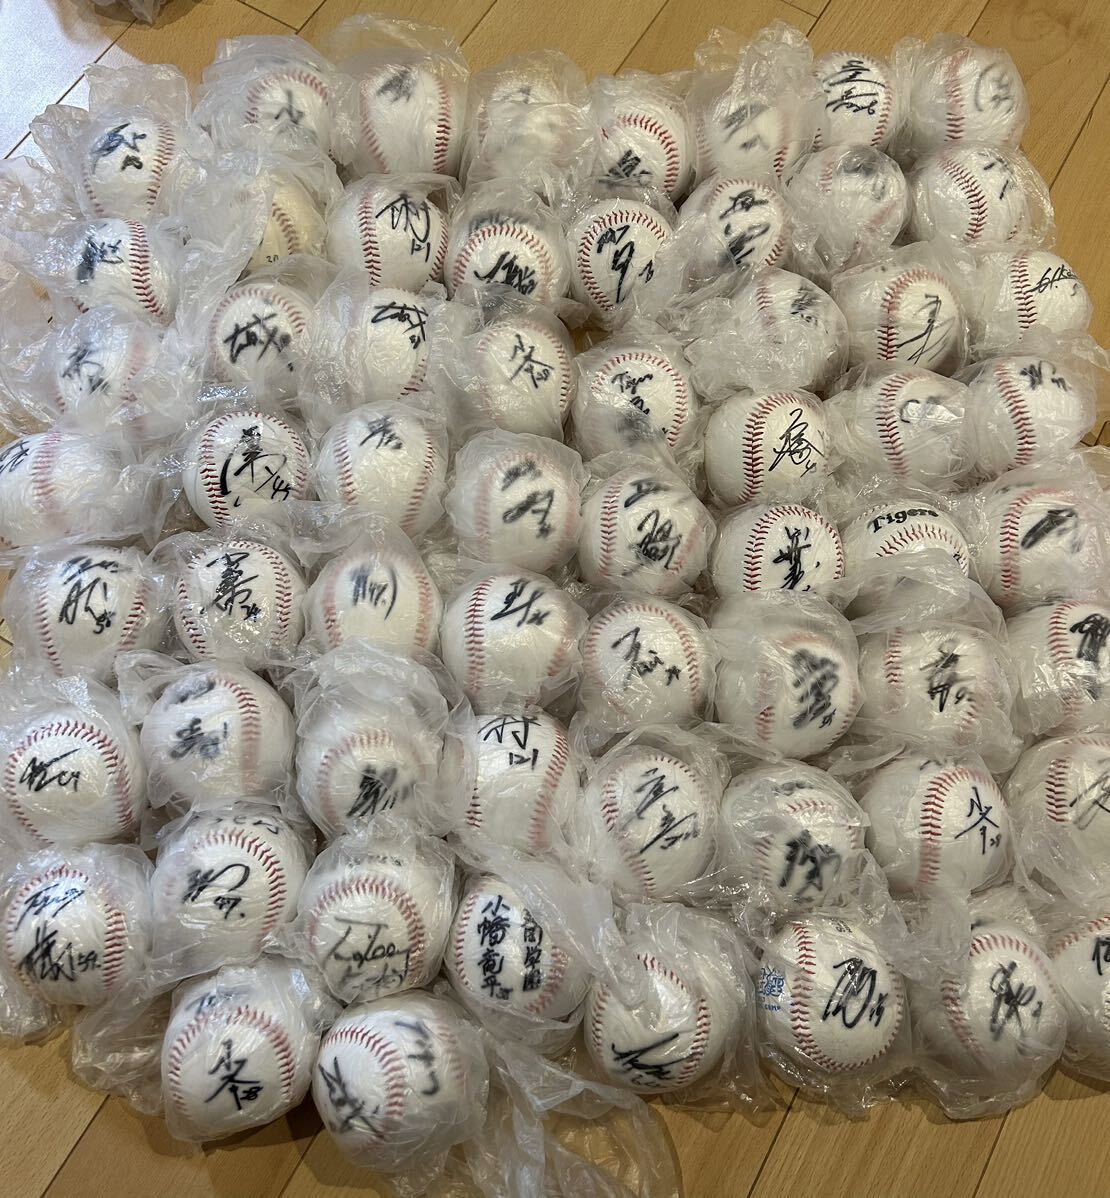 阪神タイガース 直筆サインボールセット ロゴ球あり 70球以上の画像1